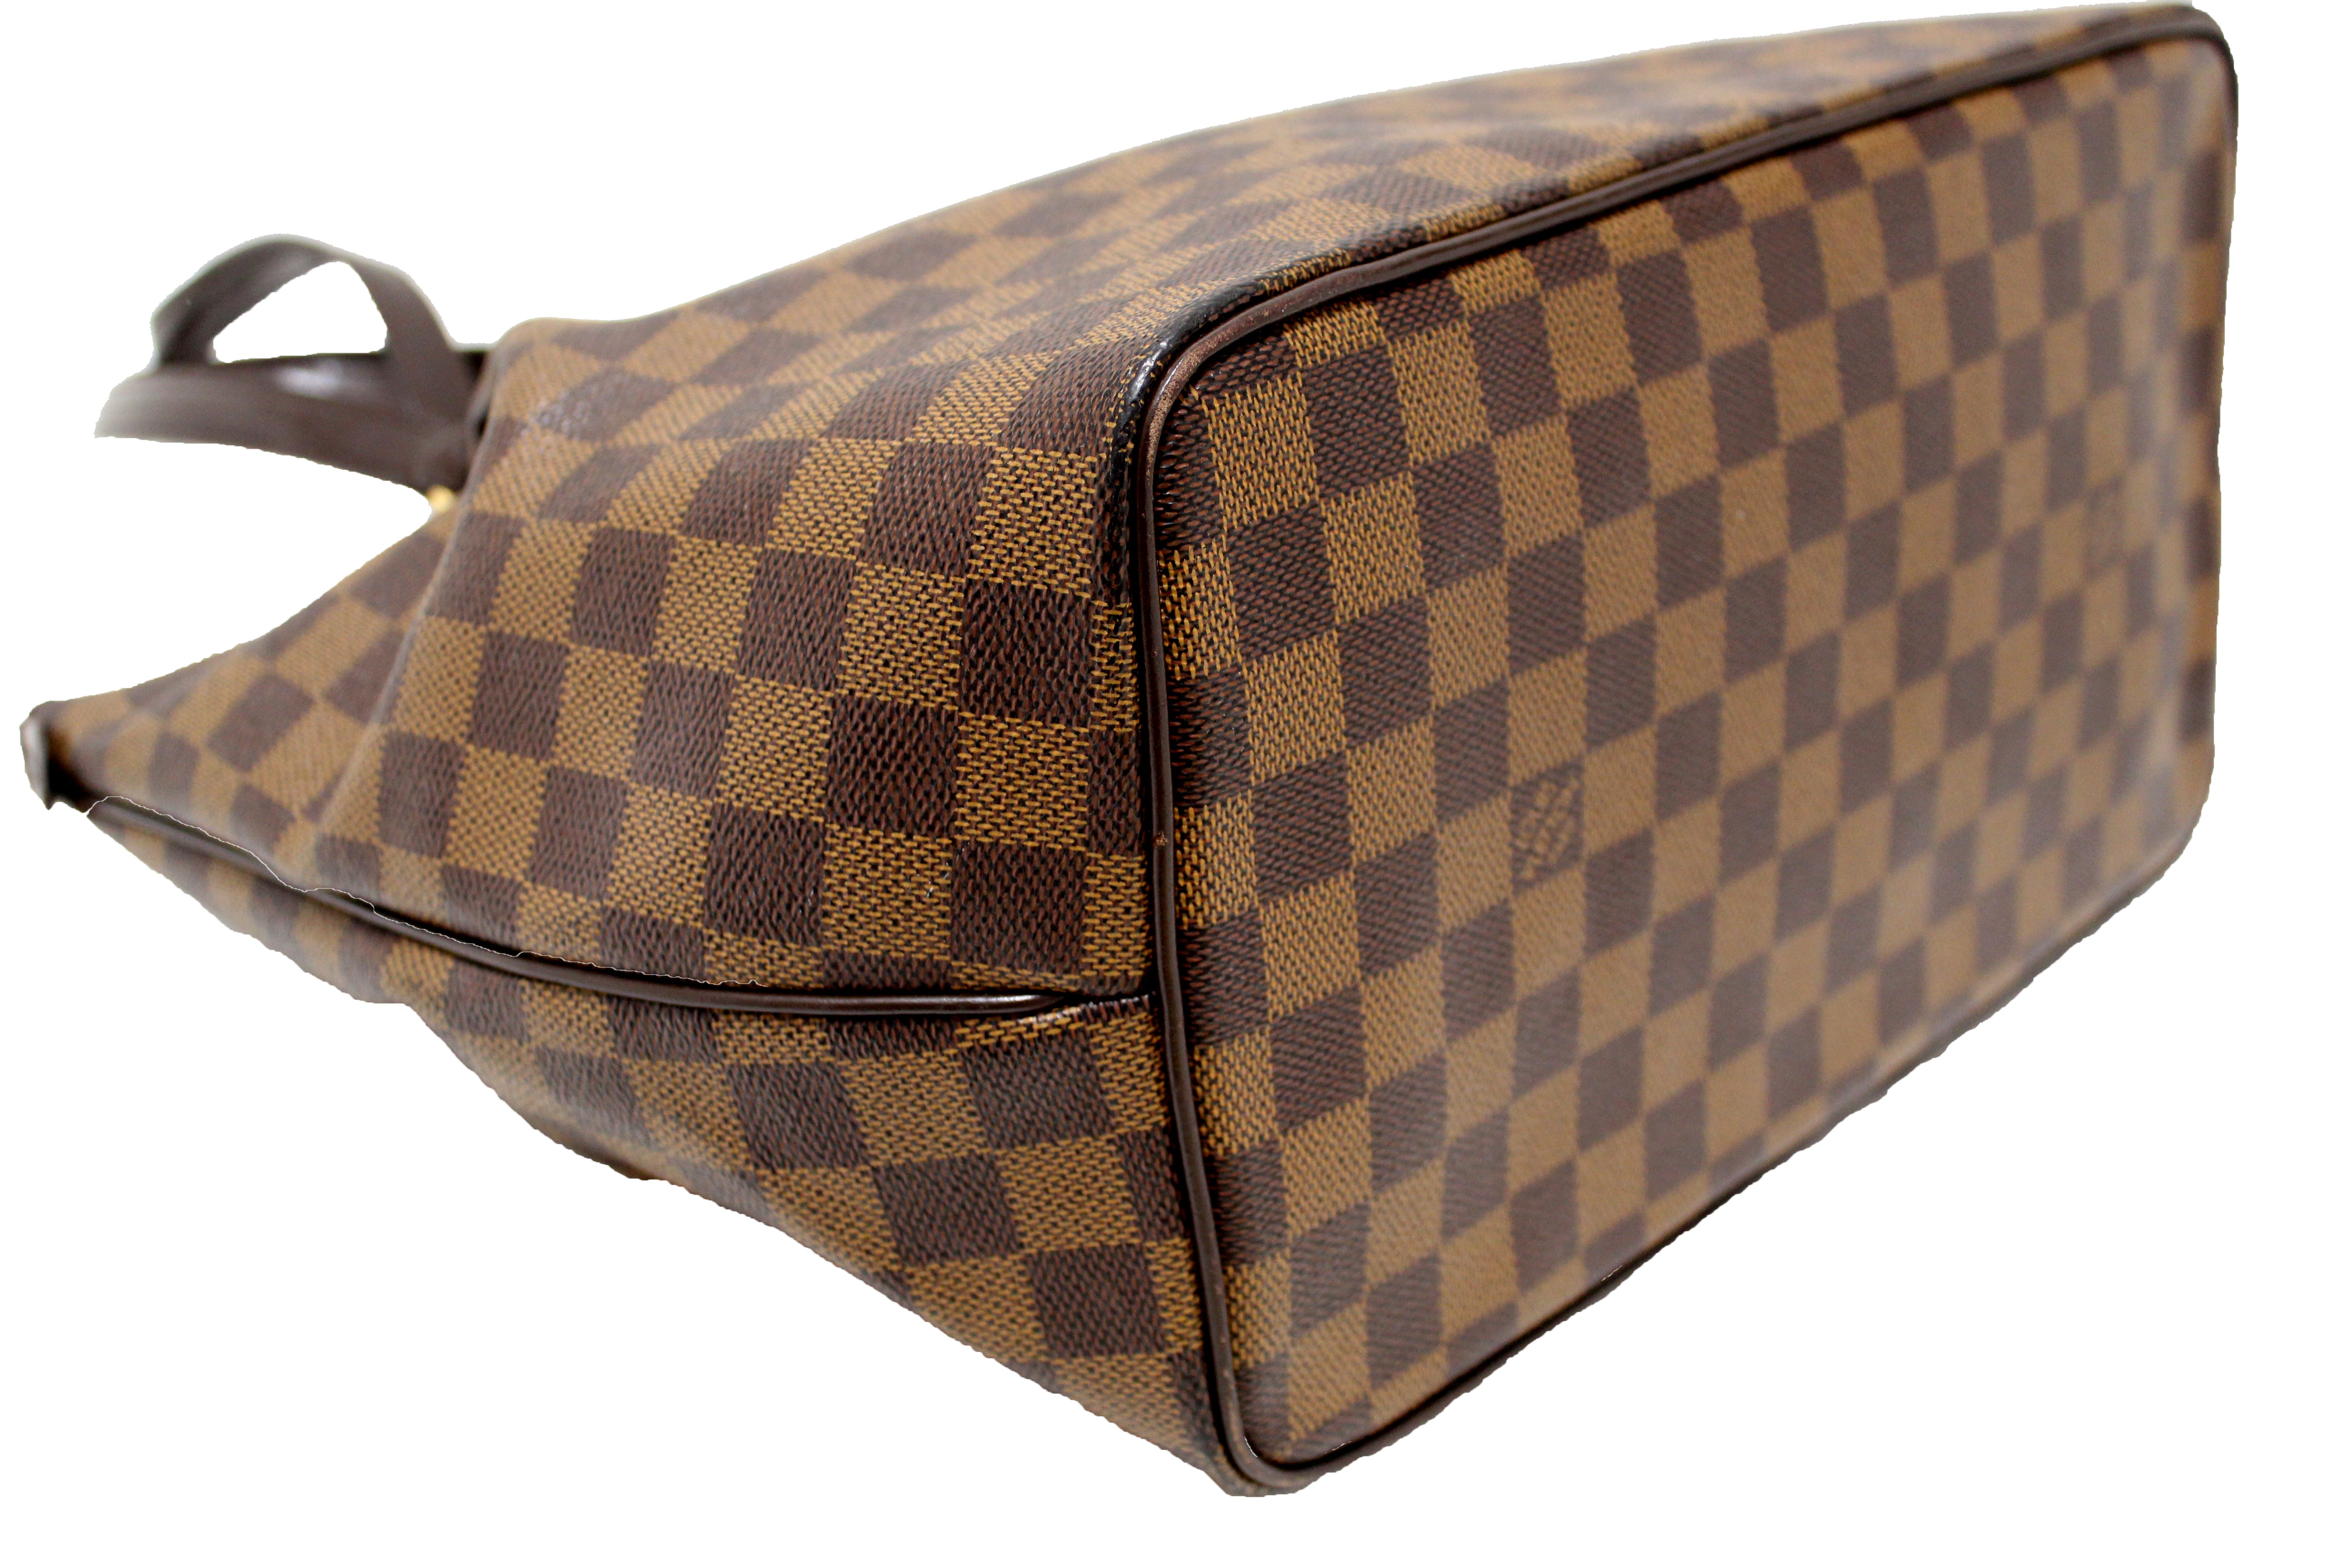 Authentic Louis Vuitton Damier Ebene Westminster GM Tote Shoulder Bag –  Paris Station Shop